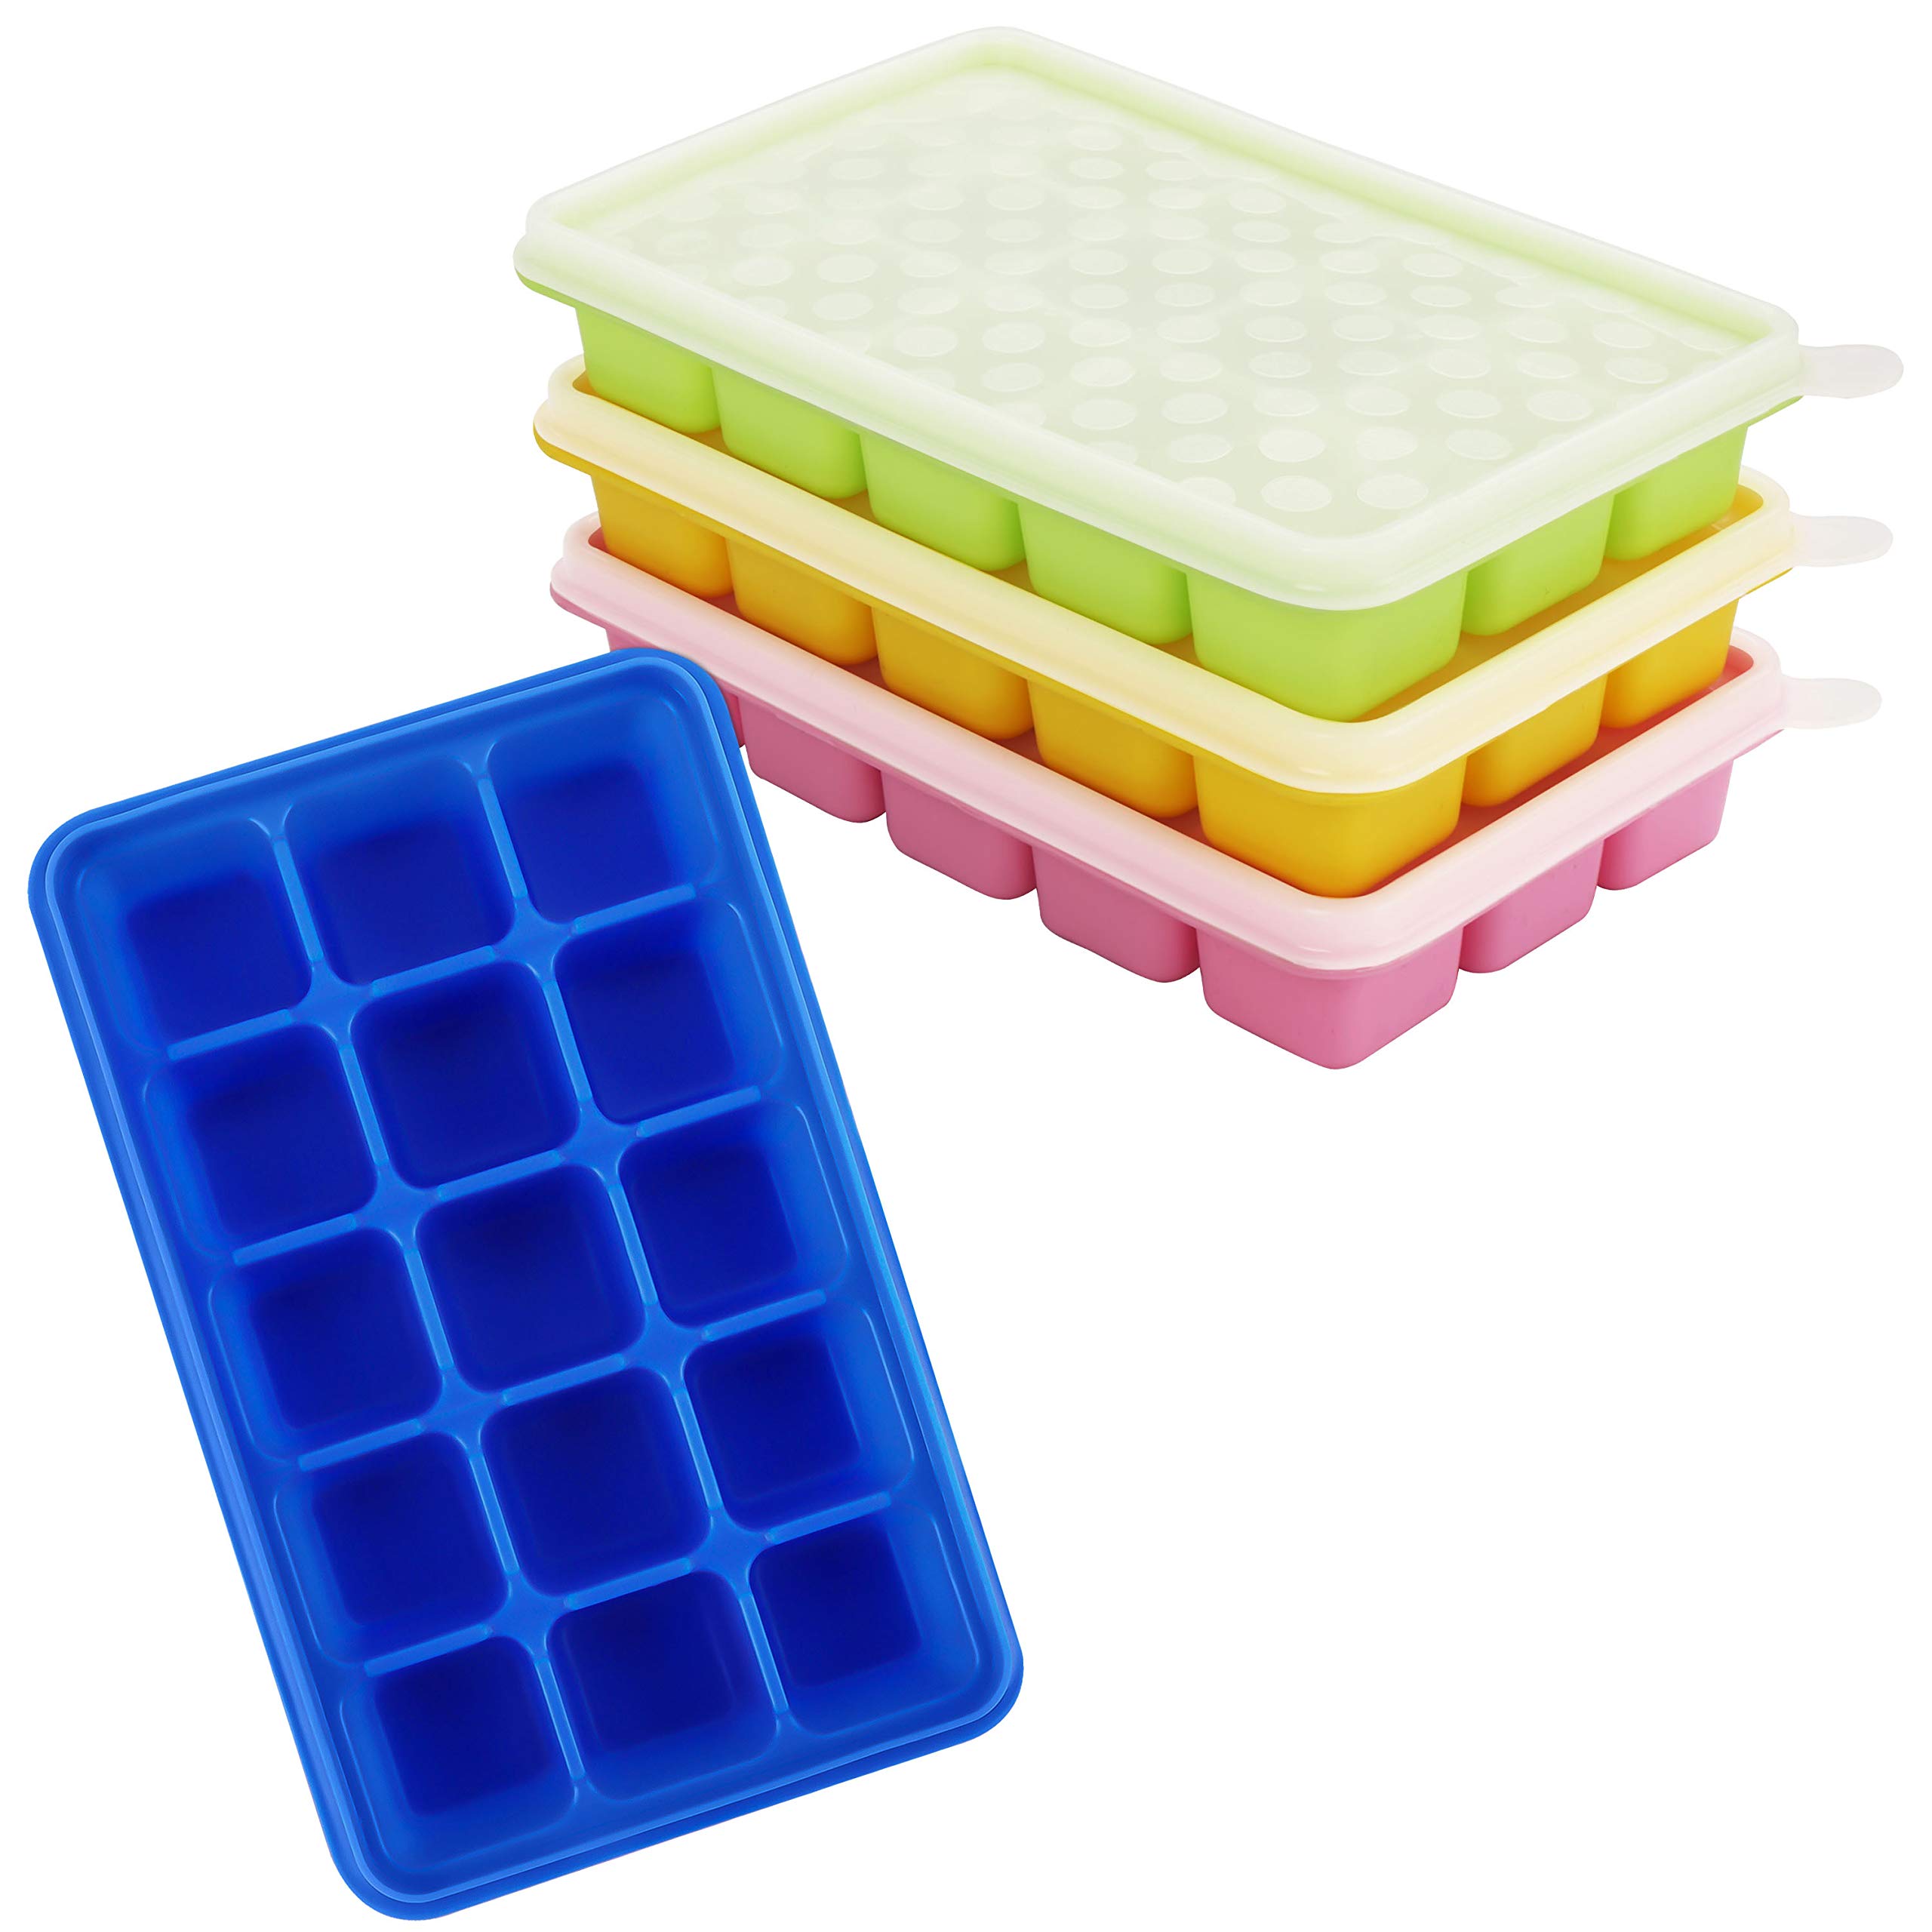 Kurtzy 4Stk Eiswürfelbehälter mit Deckel Transparent - Flexible Eiswürfelform Silikon, Eiswürfelbox für 60 Eiswürfel – Eiswürfelbereiter Form Stapelbar für Babynahrung, EIS, Getränke – BPA frei